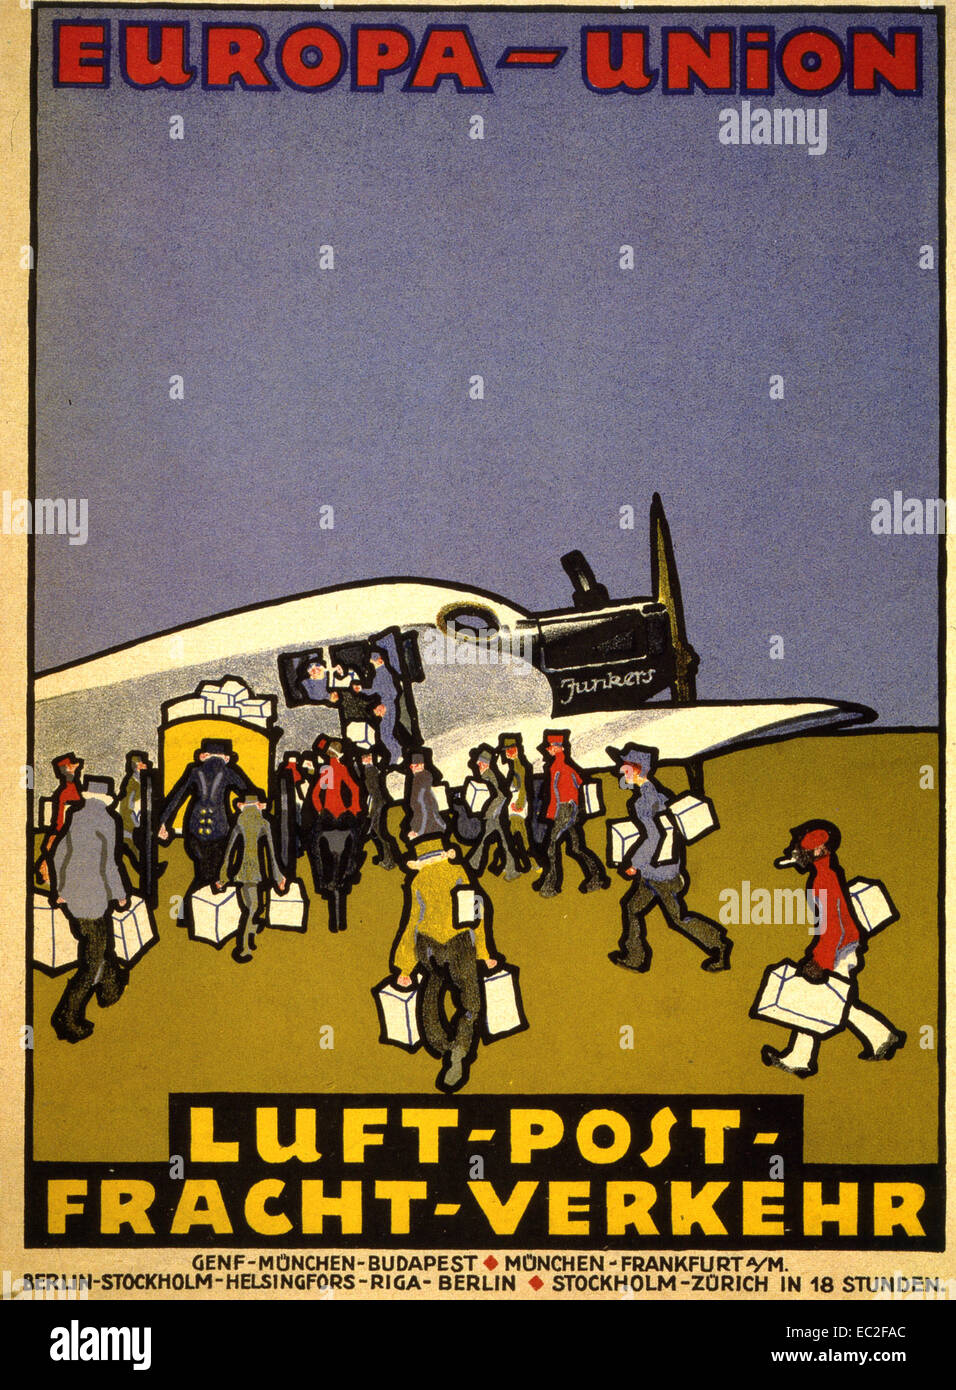 EUROPA-UNION EUROPÉENNE À propos de l'affiche de la poste aérienne 1932 montrant un avion cargo Junkers Banque D'Images